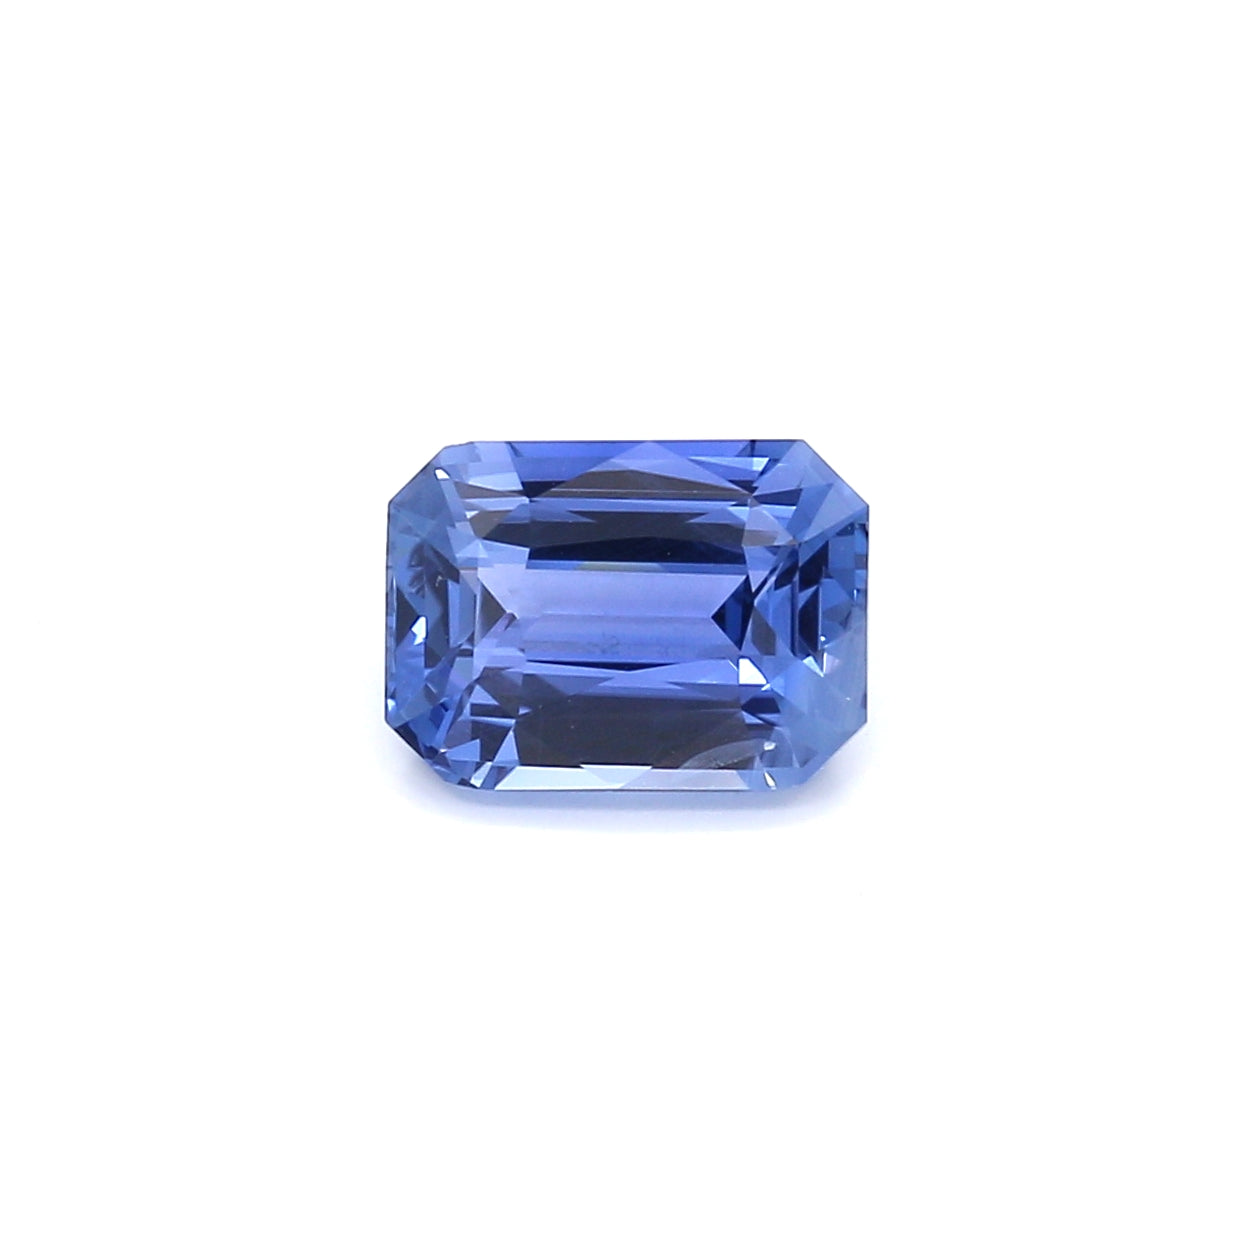 2.12ct Octagon Sapphire, No Heat, Sri Lanka - 8.44 x 6.11 x 4.10mm